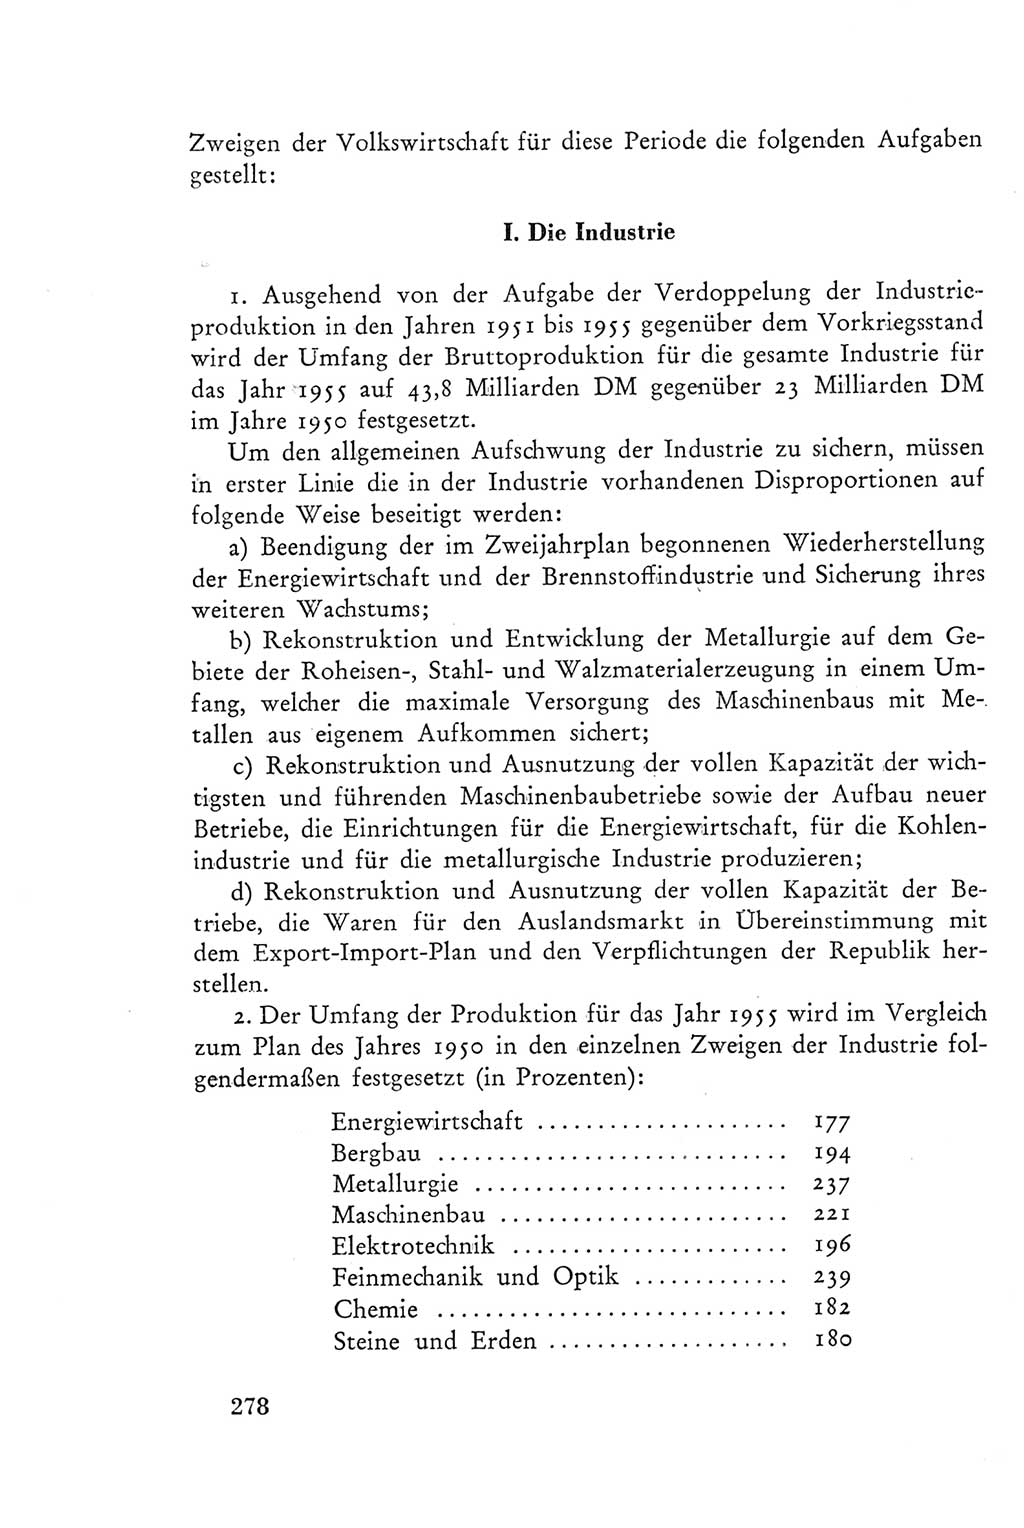 Protokoll der Verhandlungen des Ⅲ. Parteitages der Sozialistischen Einheitspartei Deutschlands (SED) [Deutsche Demokratische Republik (DDR)] 1950, Band 2, Seite 278 (Prot. Verh. Ⅲ. PT SED DDR 1950, Bd. 2, S. 278)